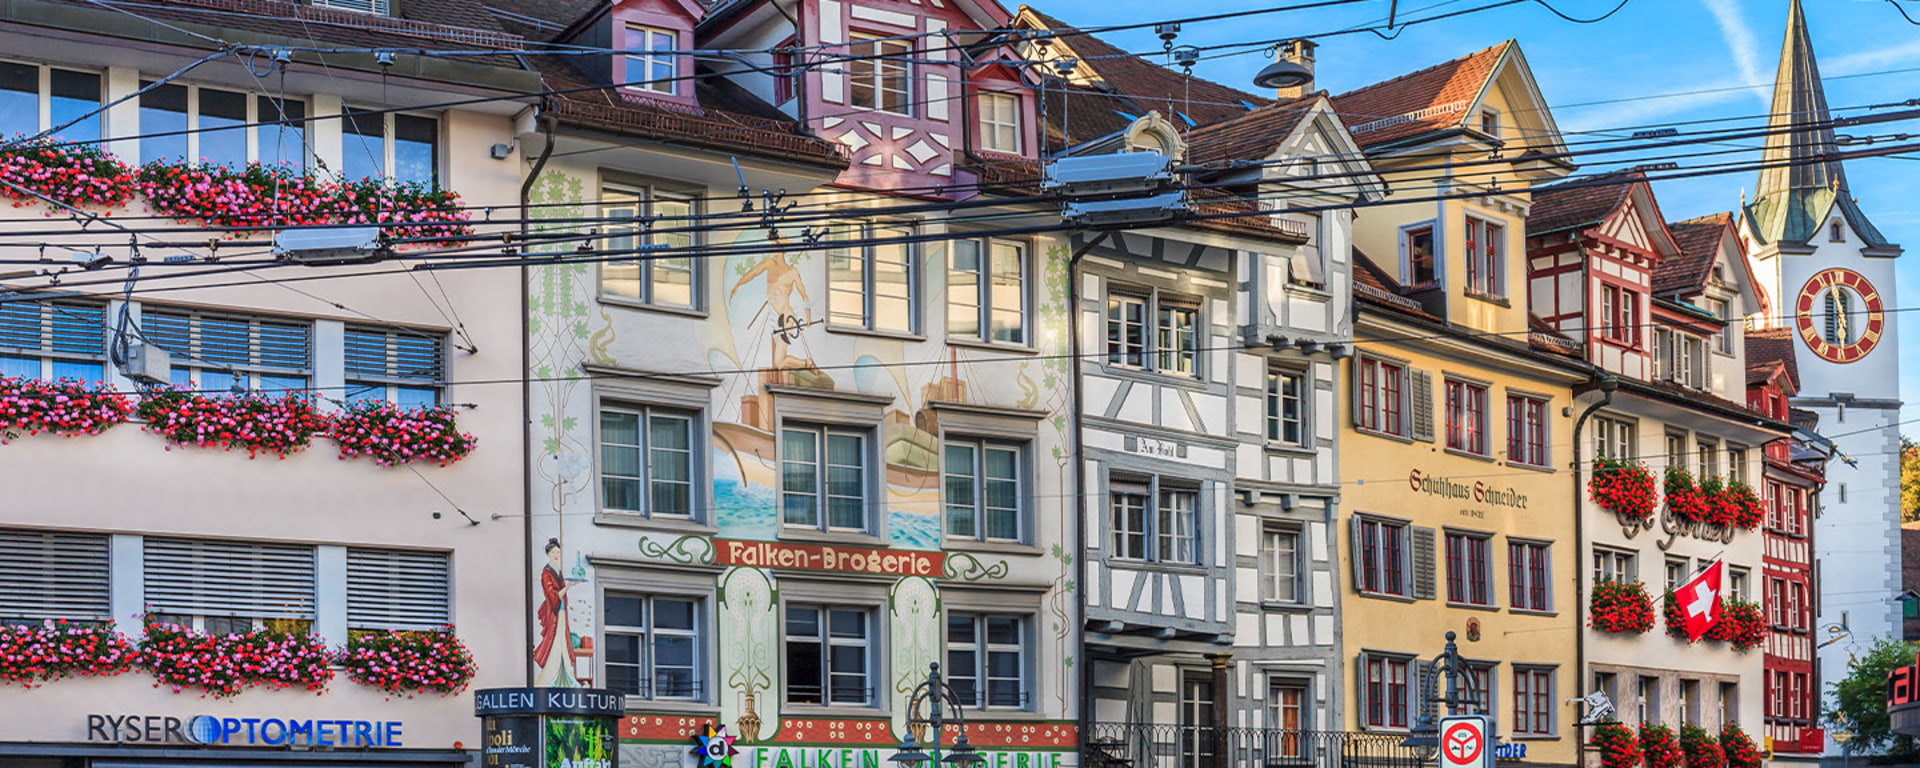 Vontobel in St. Gallen - View of a house front in St. Gallen